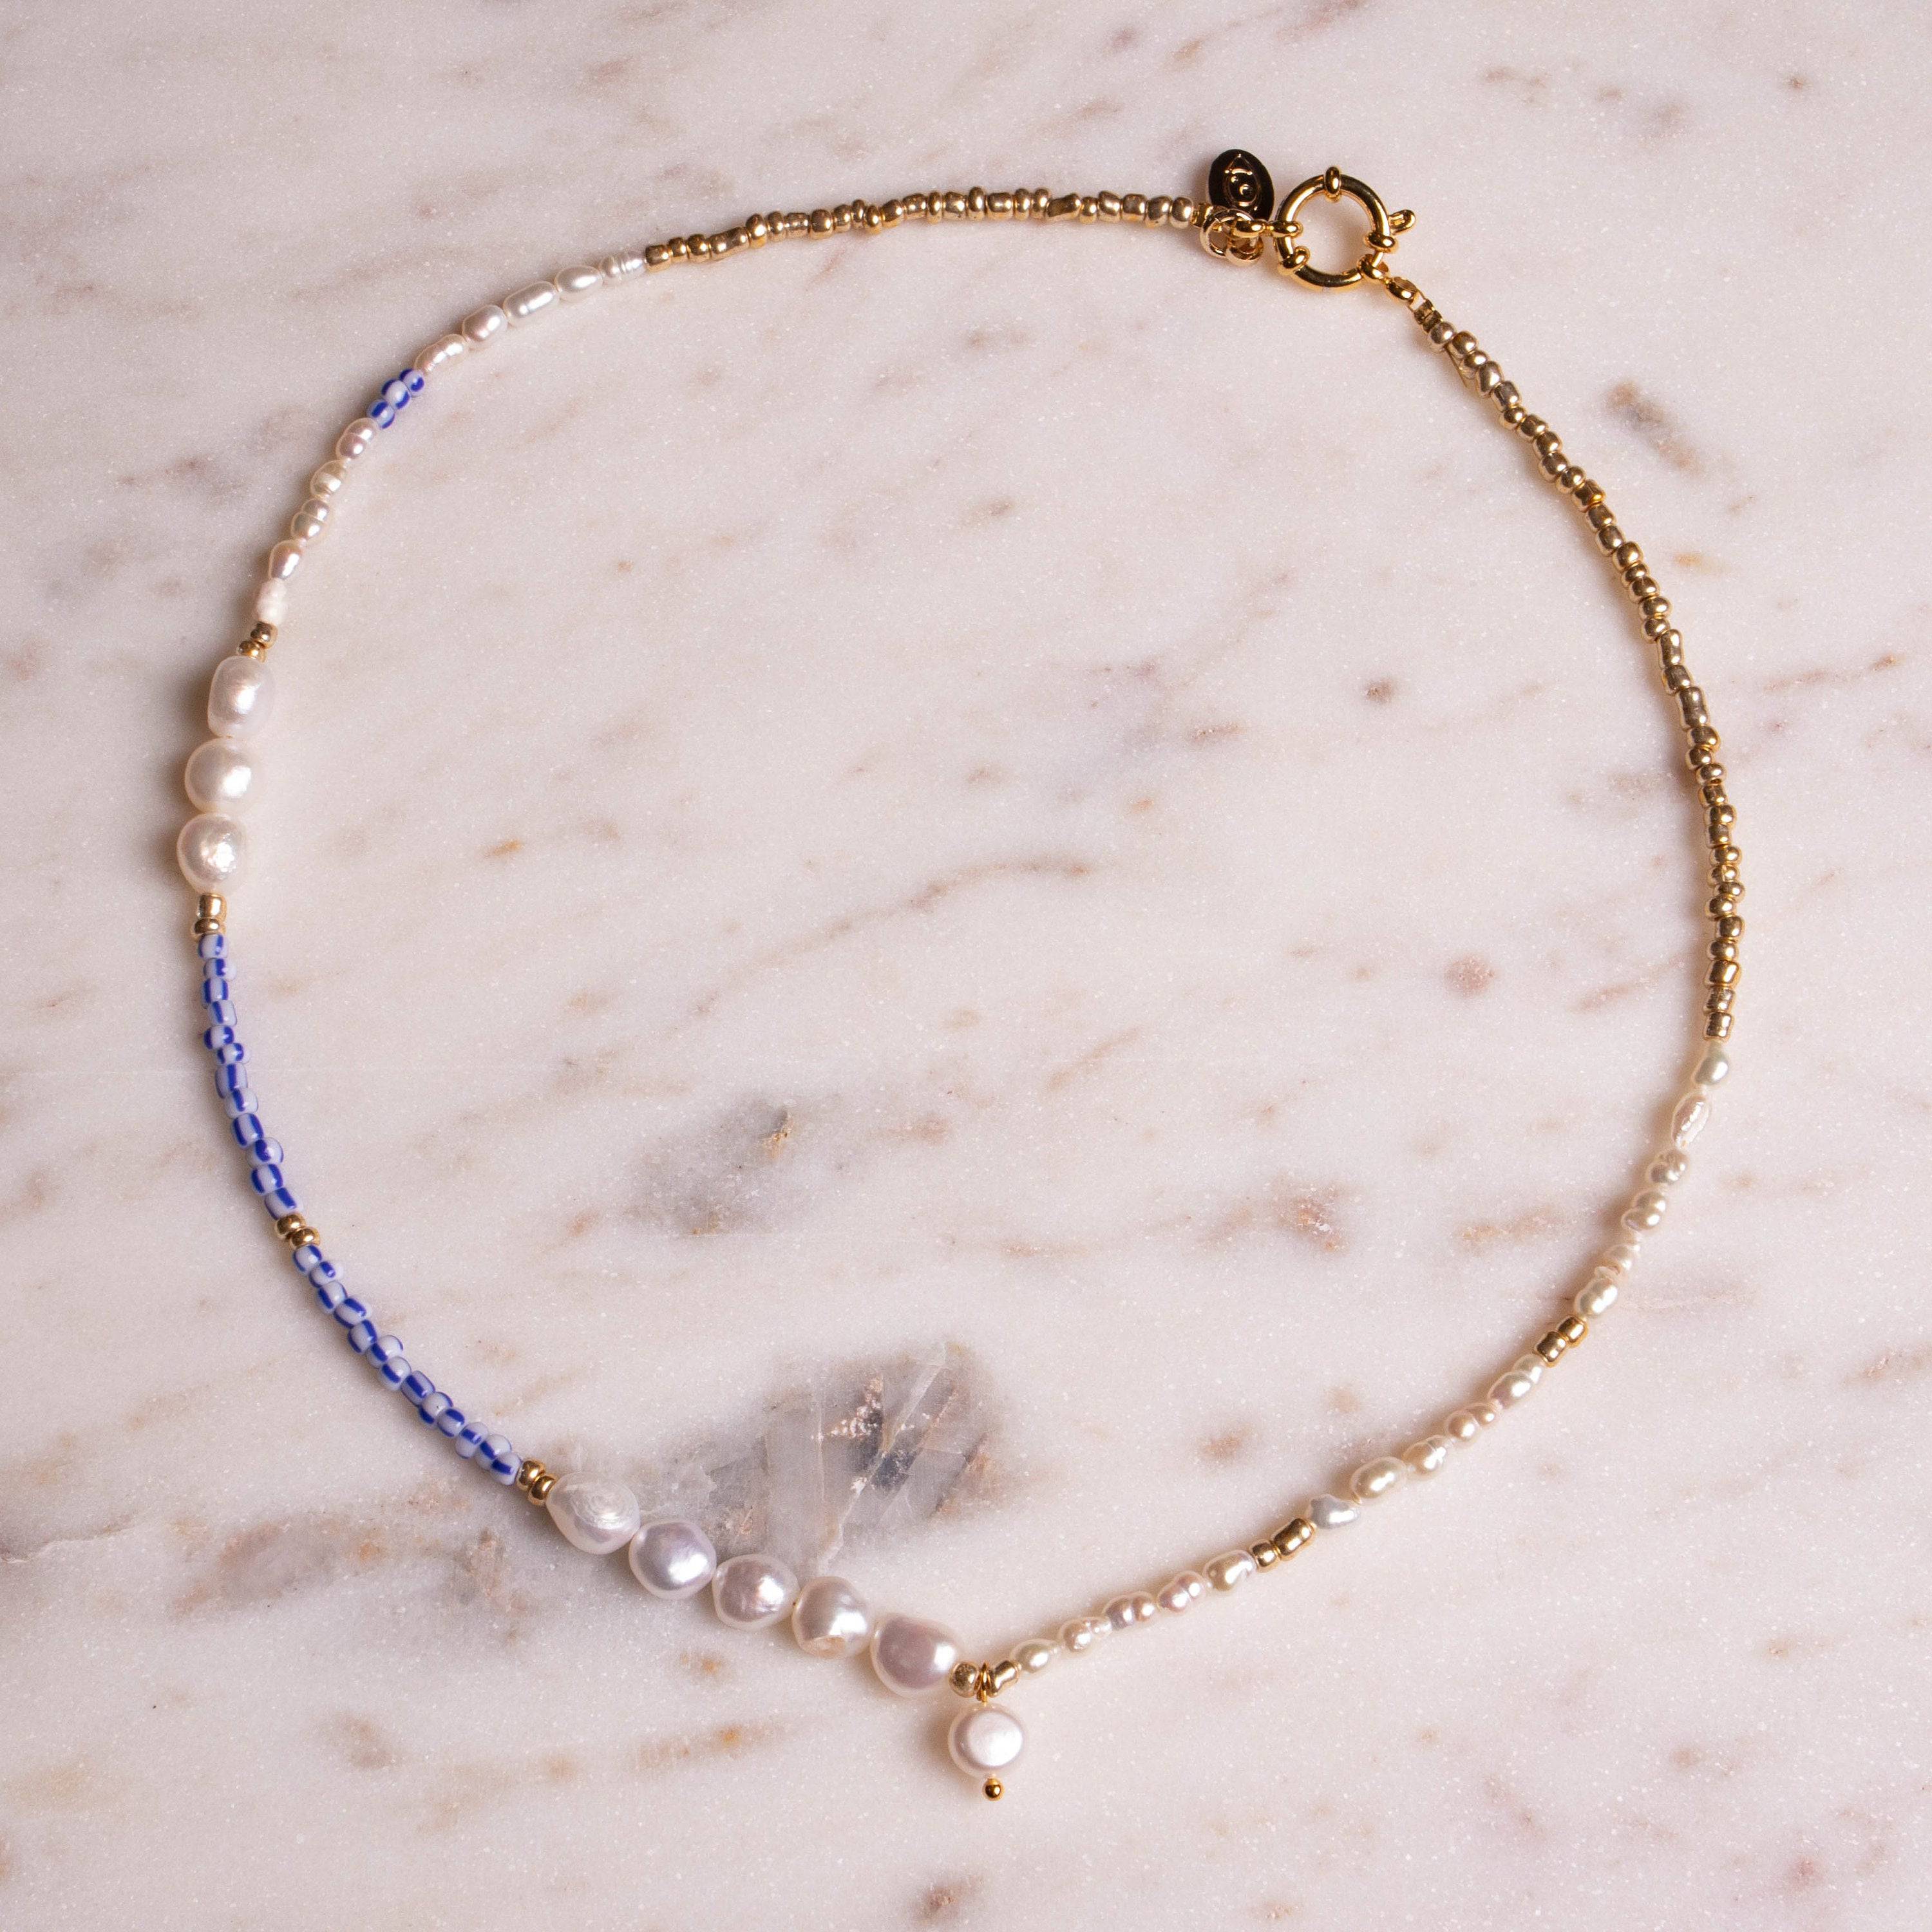 BLUE WAVE - Handgemachte verspielte Perlenkette - Kette Perlen blau gold weiß vergoldet - NooeBerlin